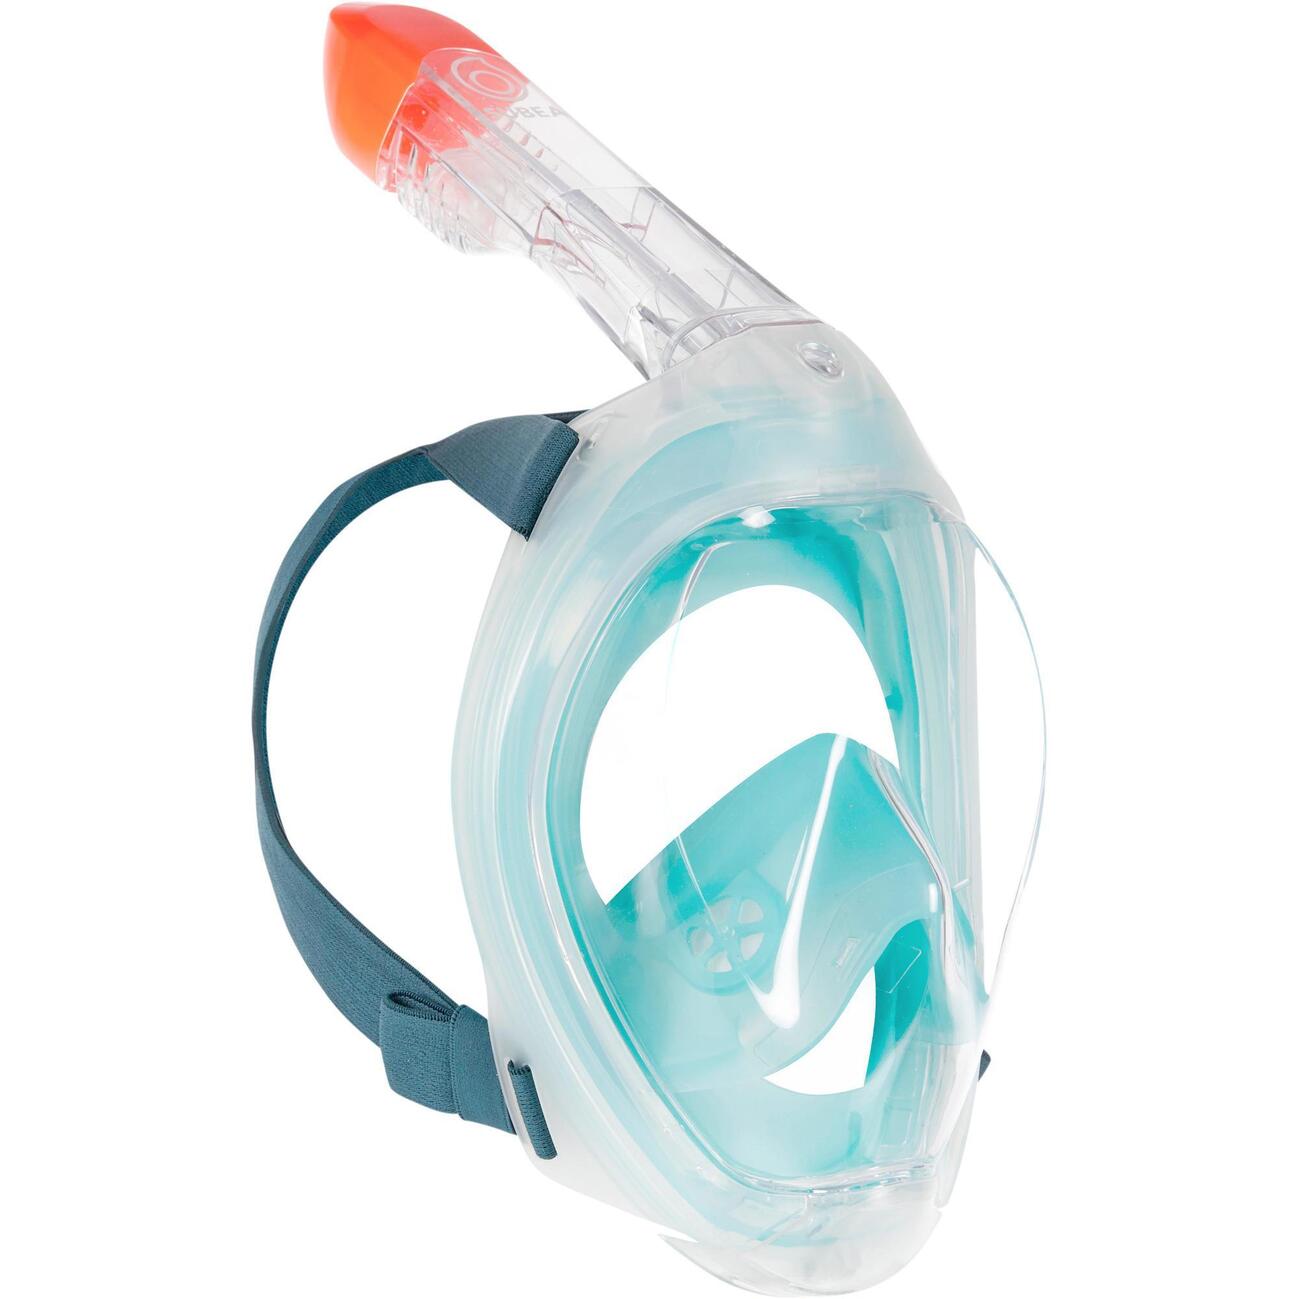 Productos más vendidos Decathlon: máscara snorkel - Alavera Parque Comercial 